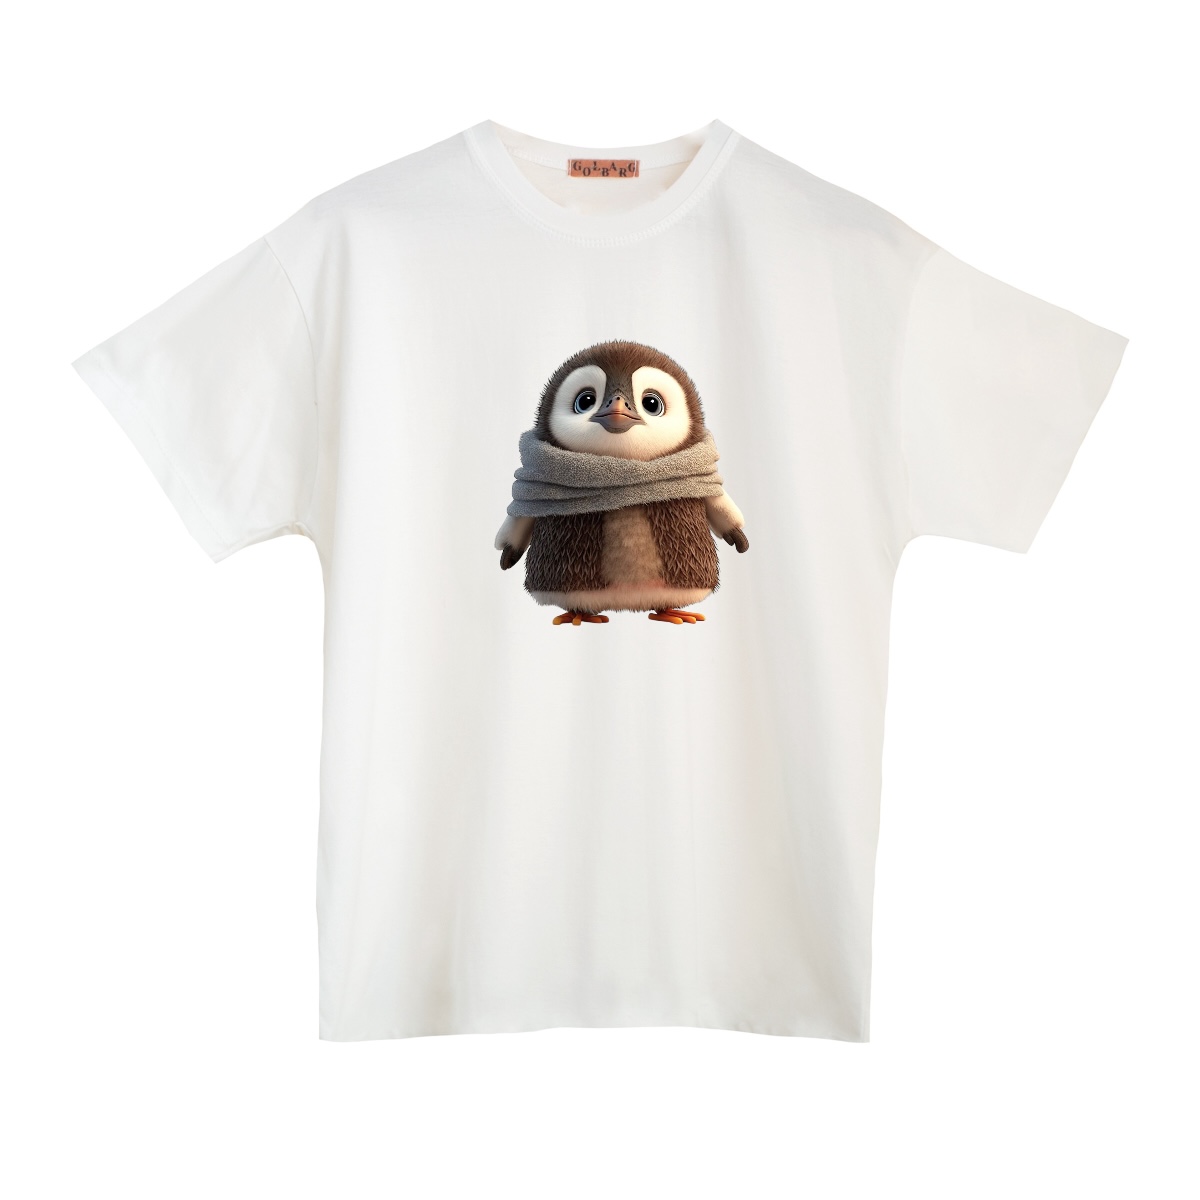 تی شرت بچگانه مدل پنگوئن کد 2